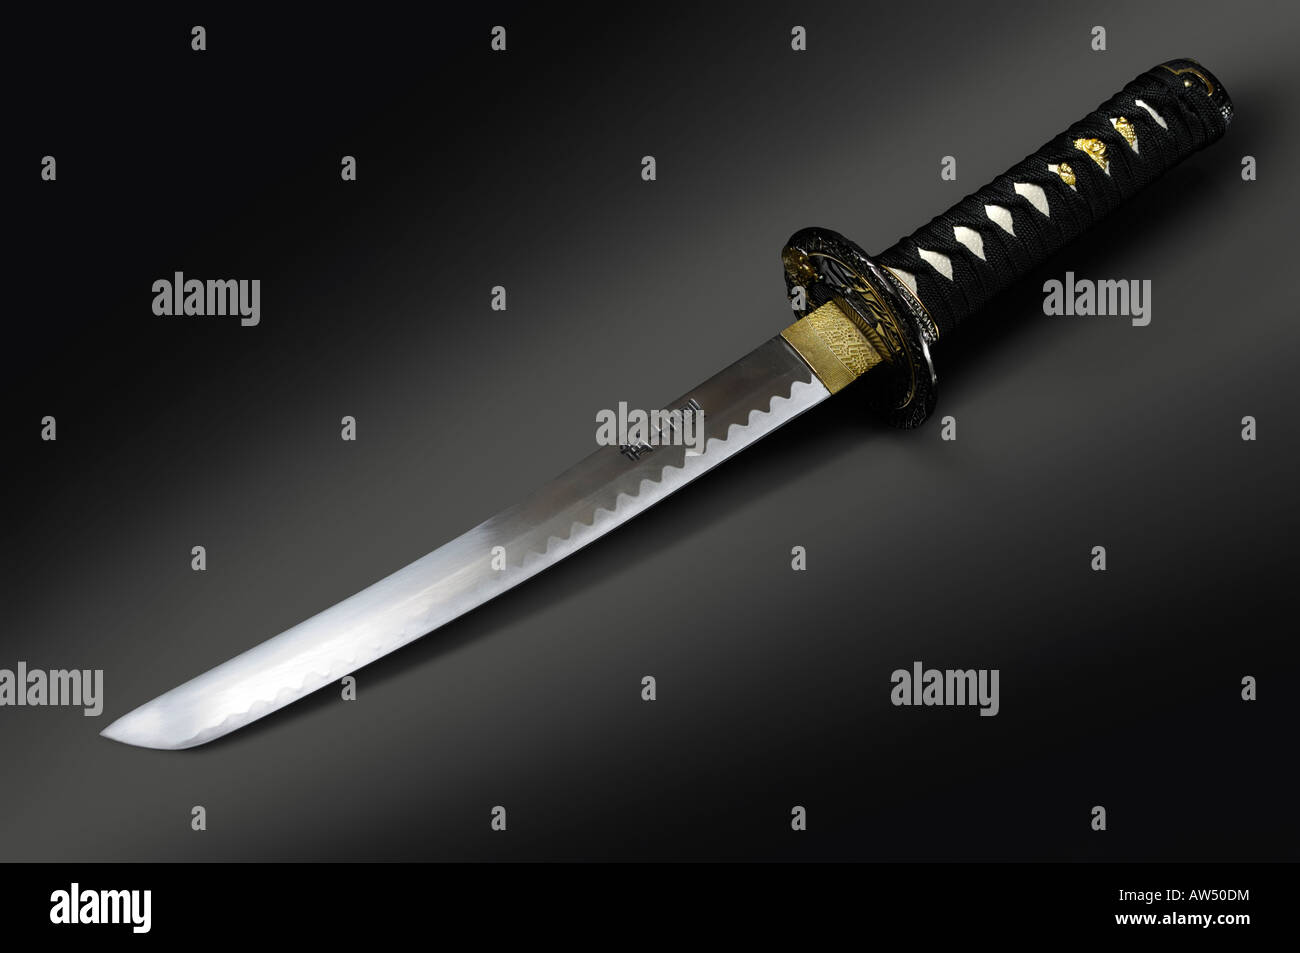 La spada del samurai immagini e fotografie stock ad alta risoluzione - Alamy